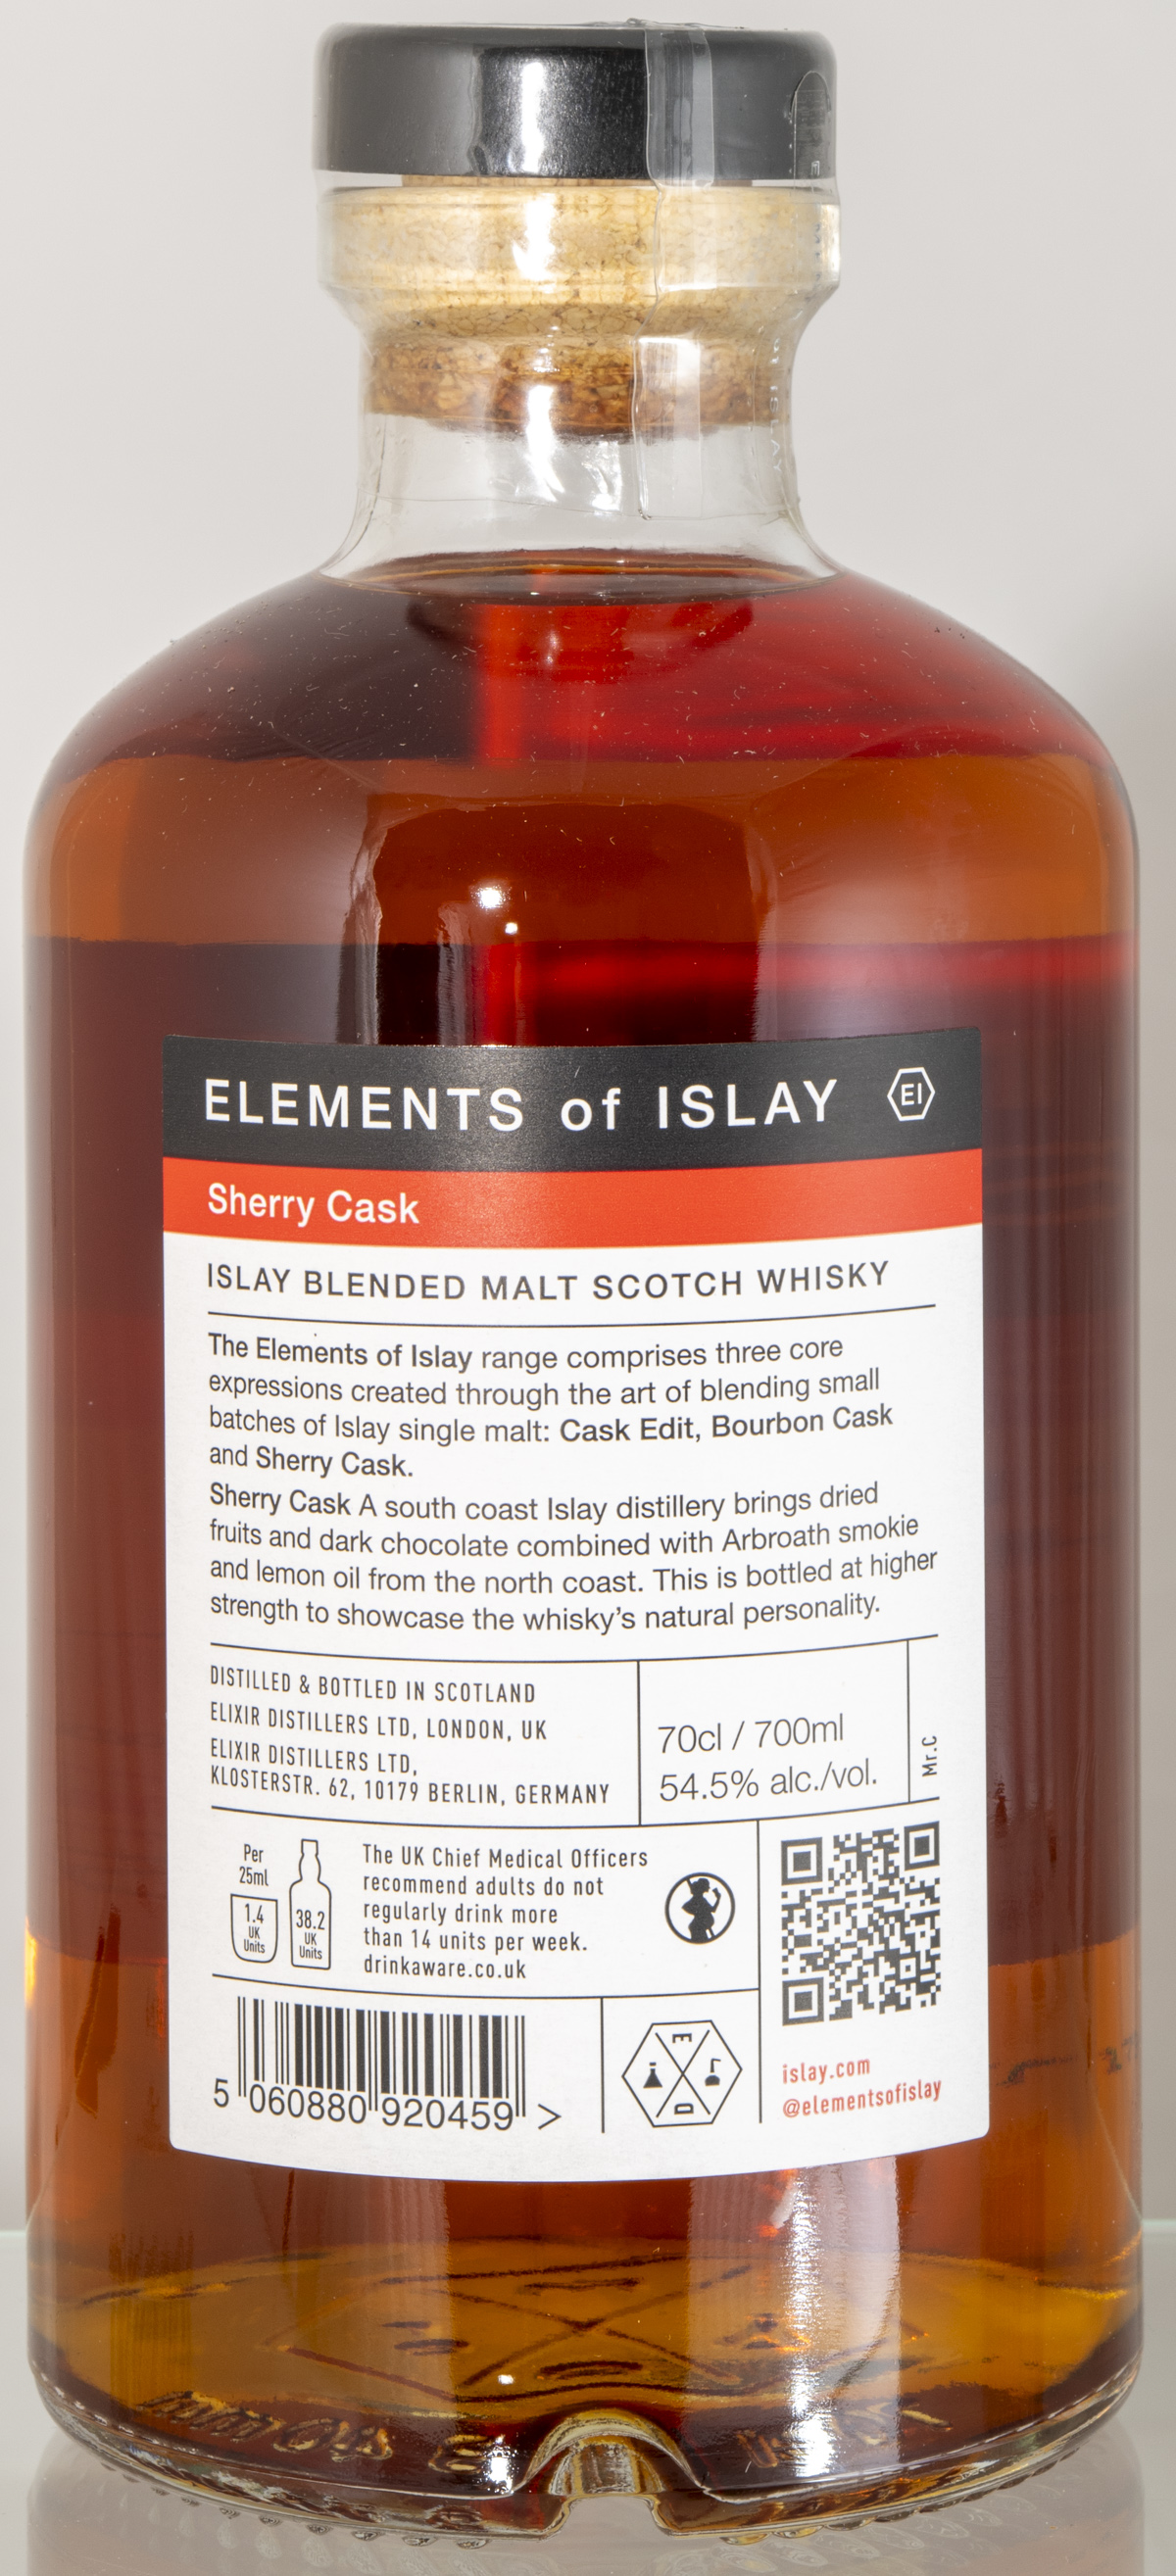 Billede: D85_8324 - Elements of Islay - Sherry Cask - bottle back.jpg